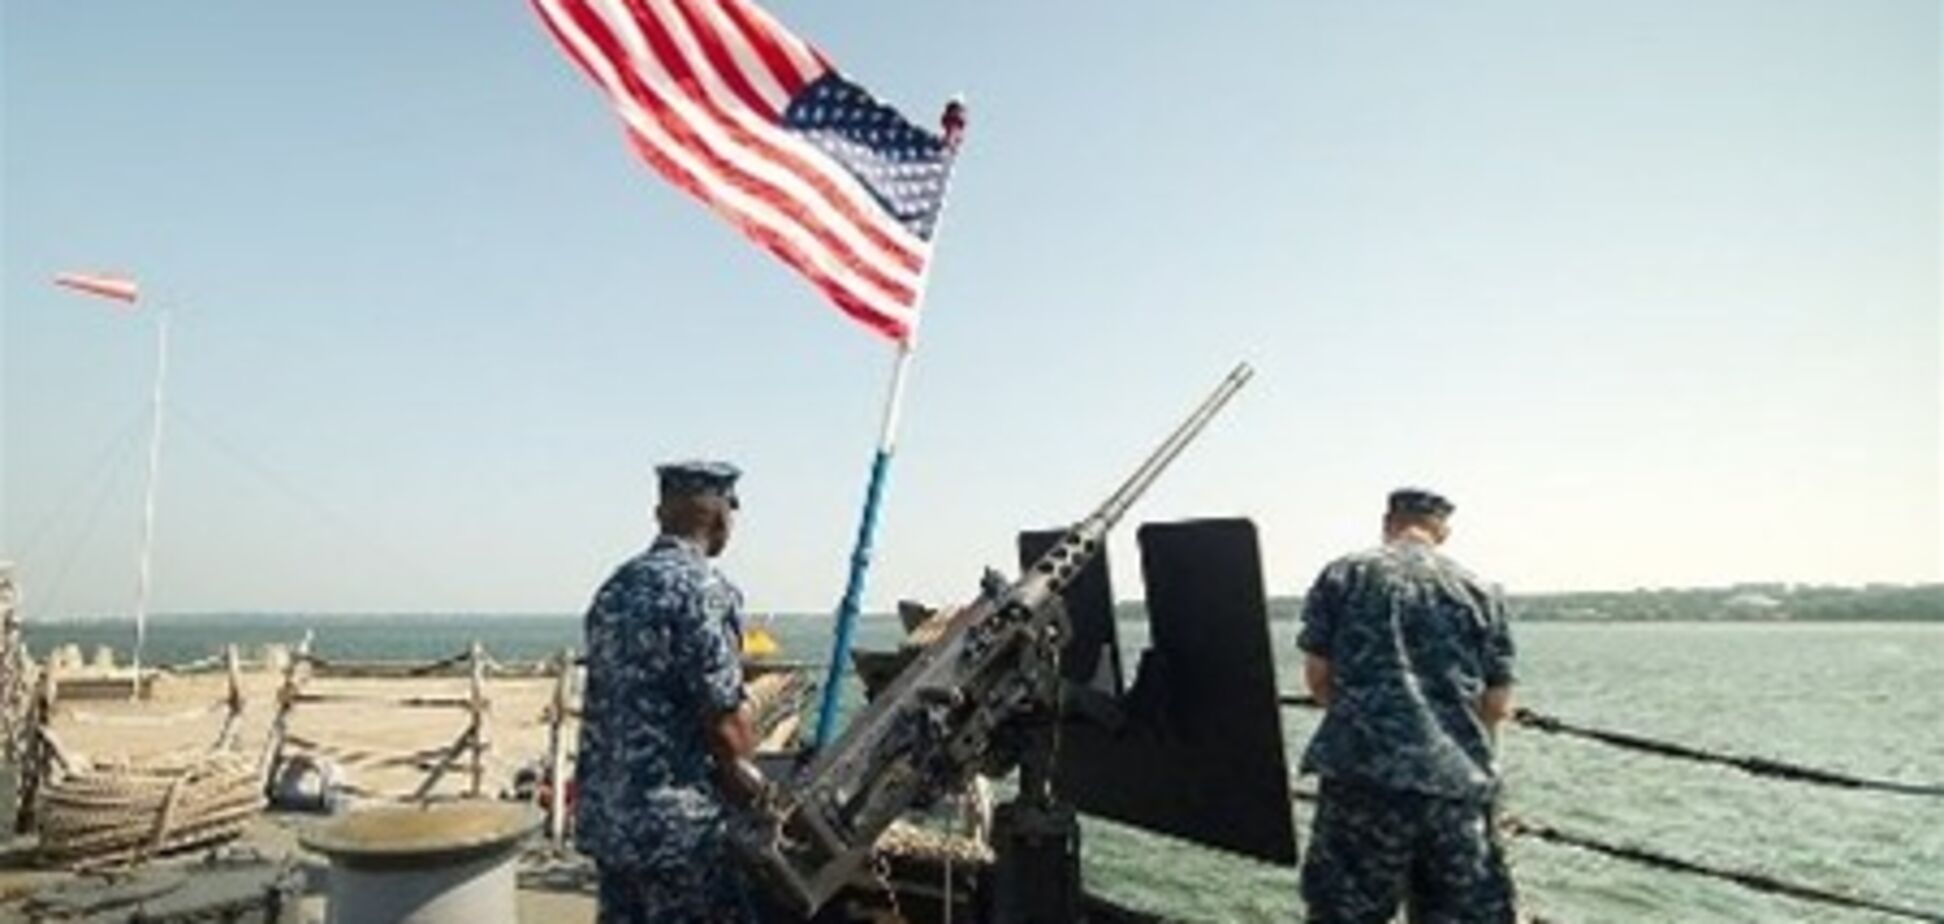 Флот США вирішив відмовитися від прописних літер в наказах, щоб не лякати моряків